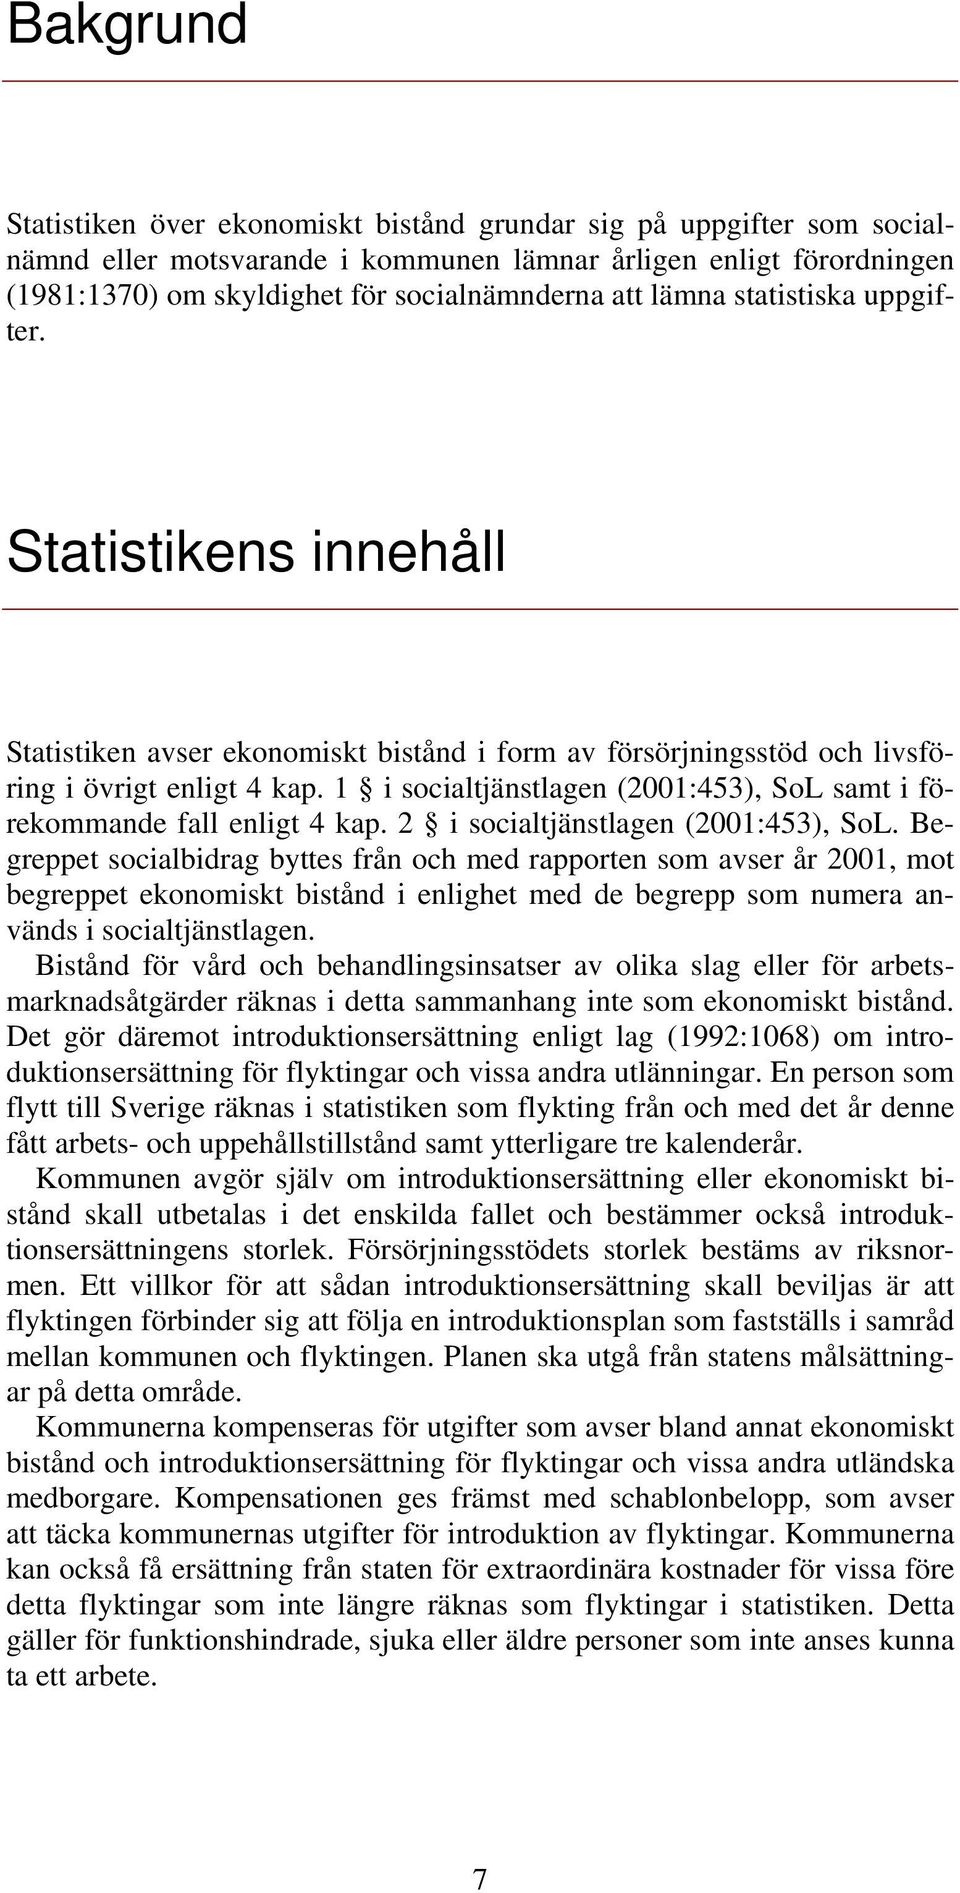 1 i socialtjänstlagen (2001:453), SoL samt i förekommande fall enligt 4 kap. 2 i socialtjänstlagen (2001:453), SoL.